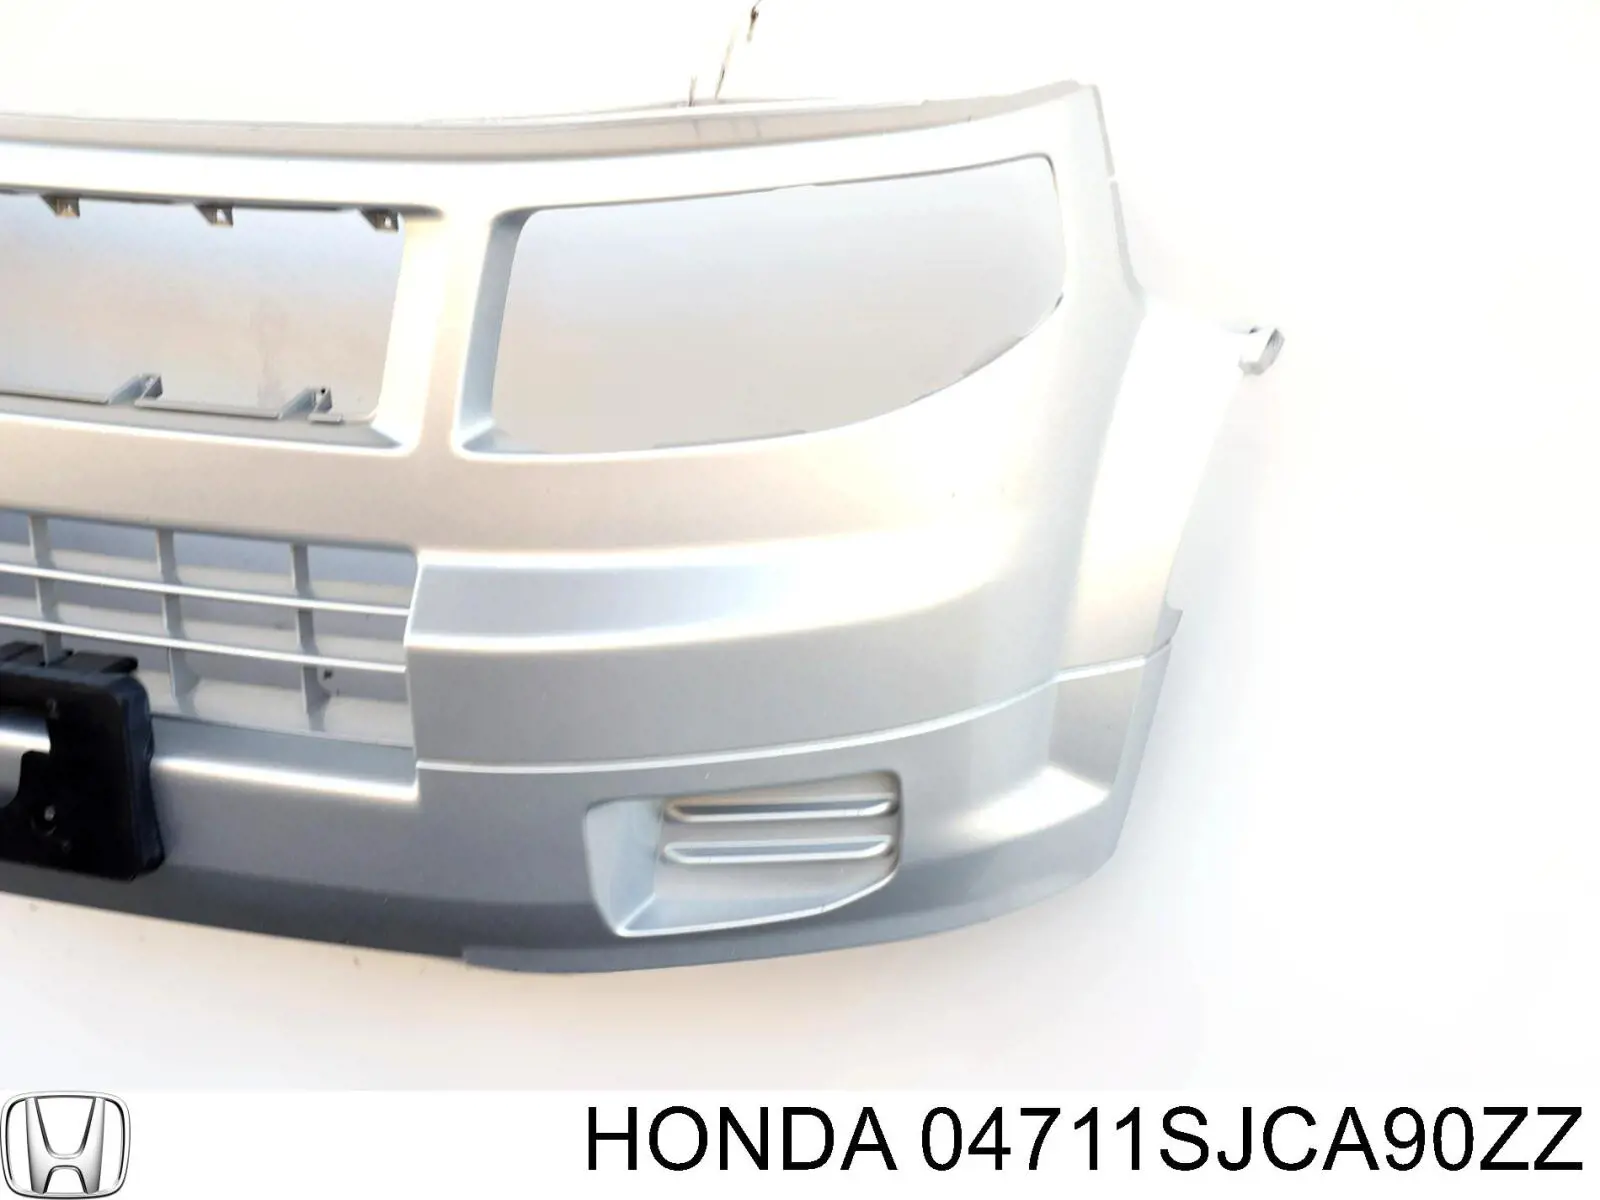 Parachoques delantero Honda Ridgeline 